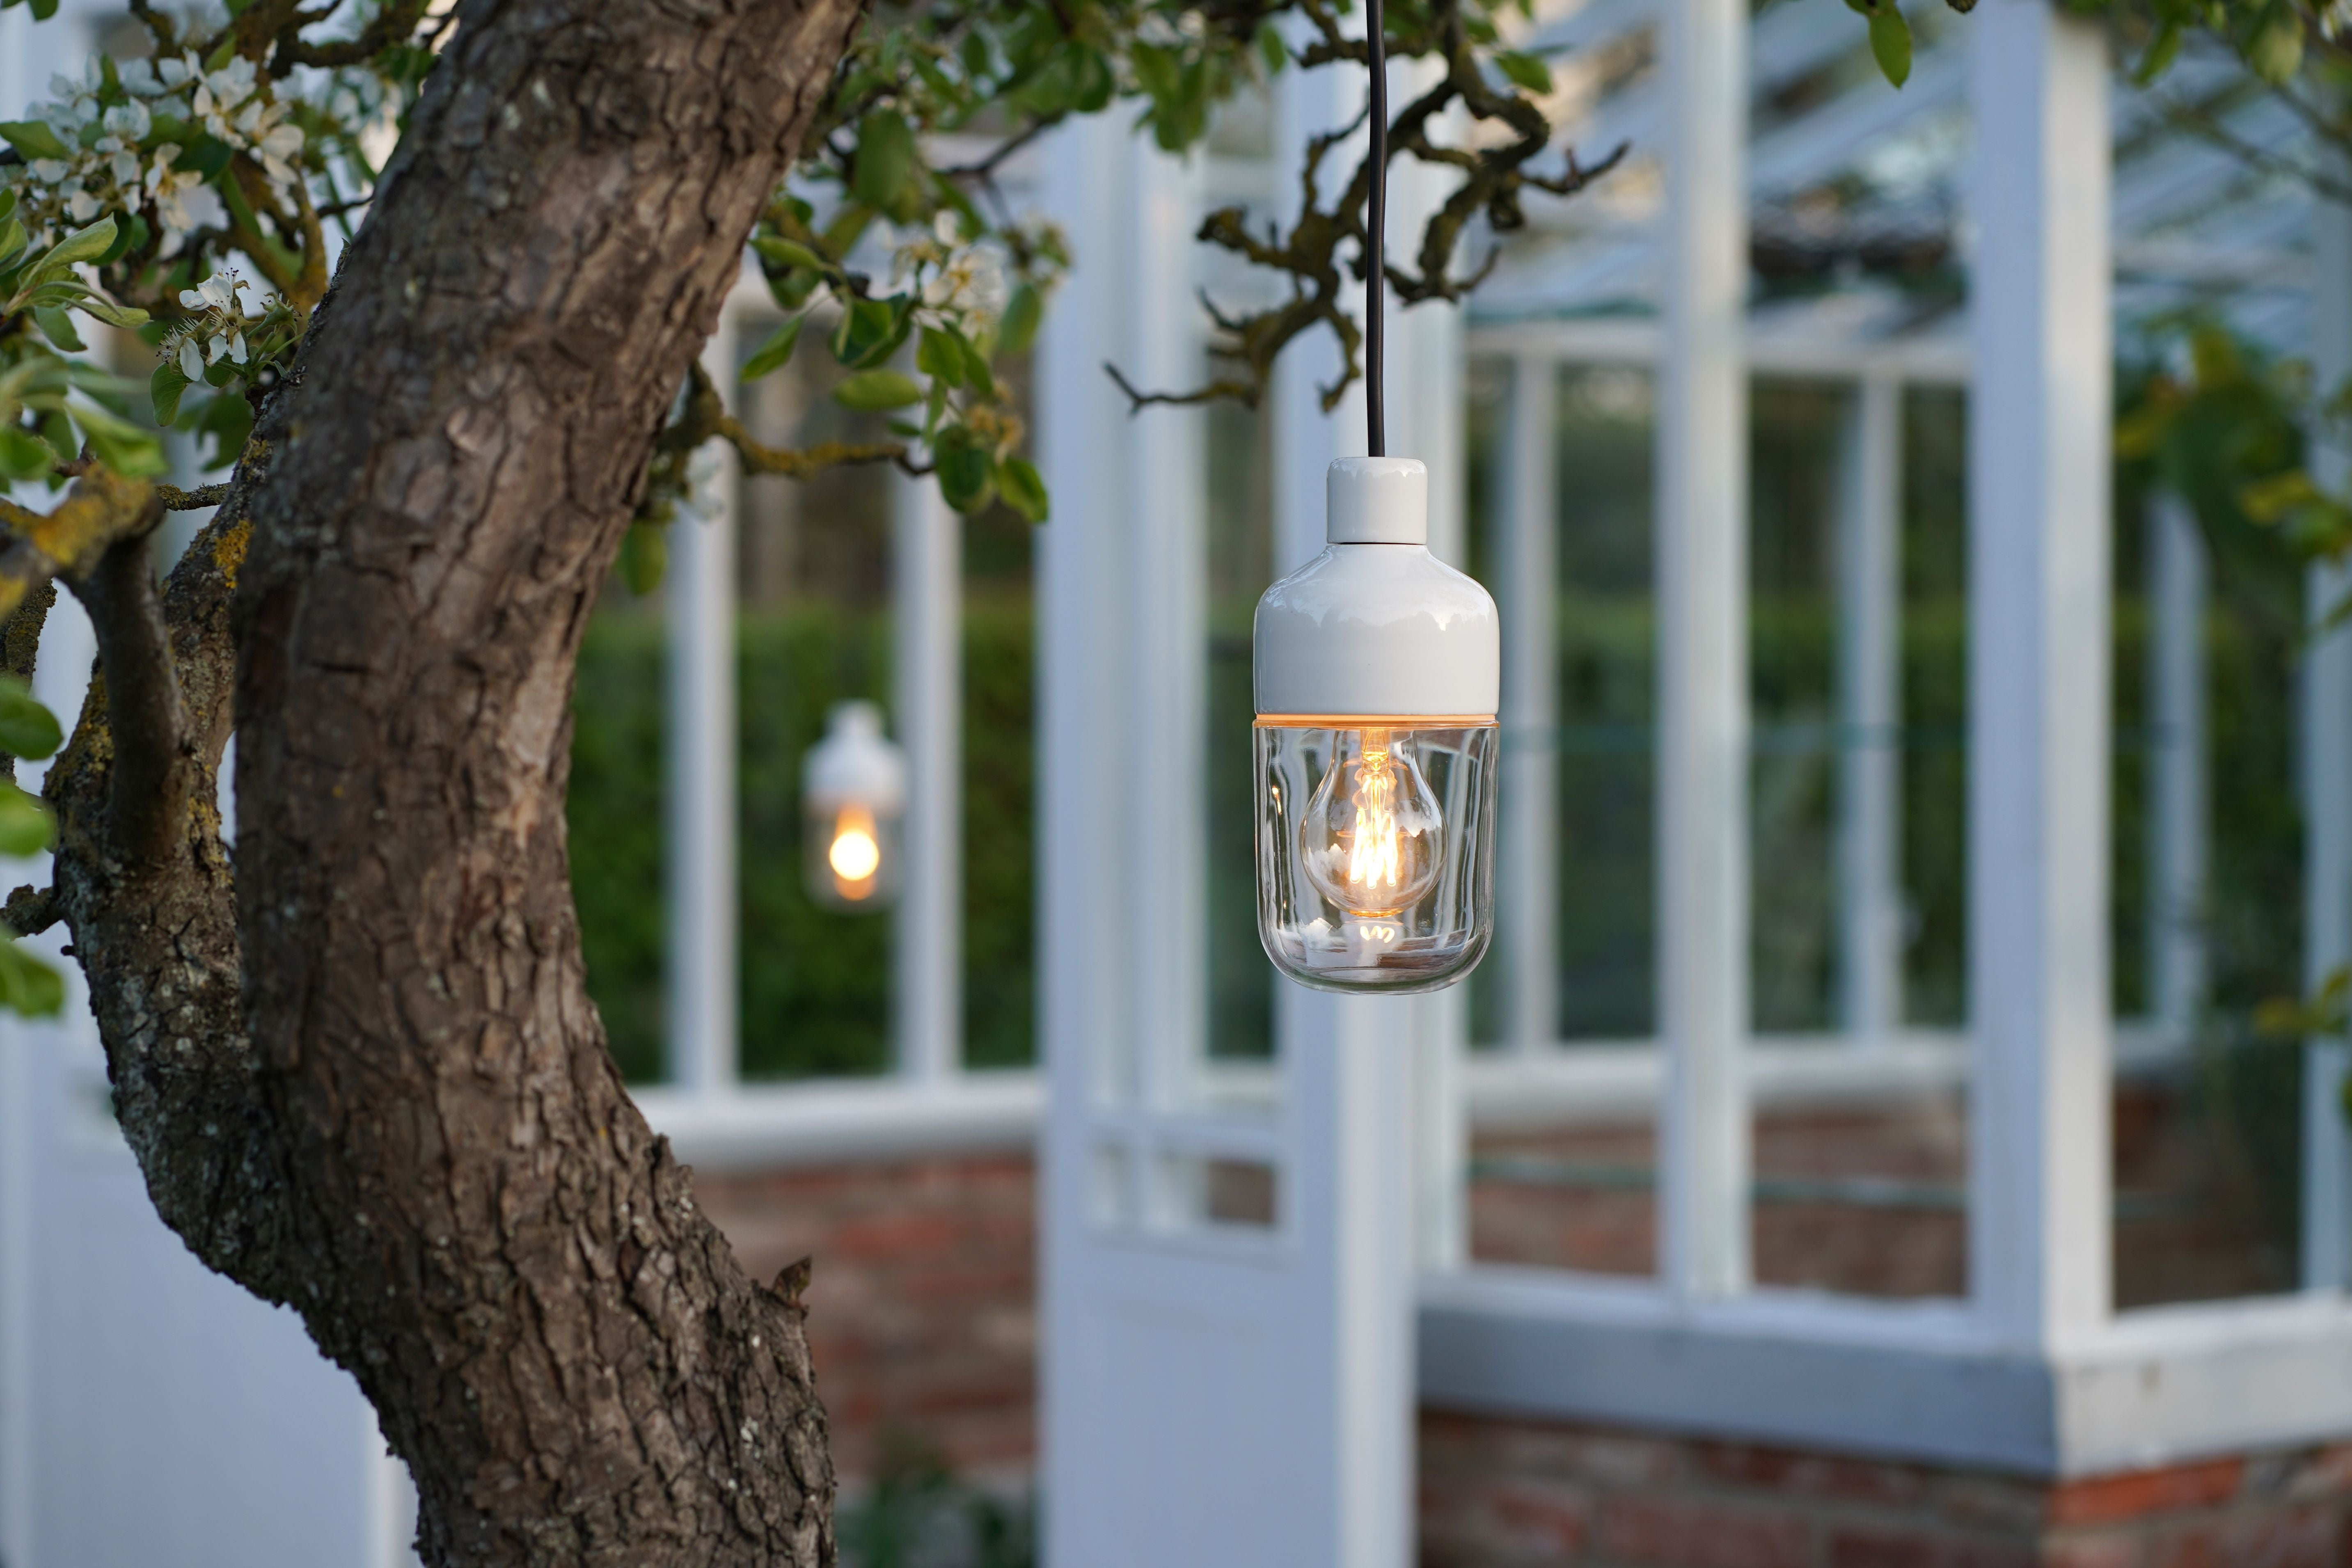 Ohm Pendelleuchte Porzellan 100/215 Outdoor weiss Klarglas, im Garten von Baum hängend | Ifö Electric